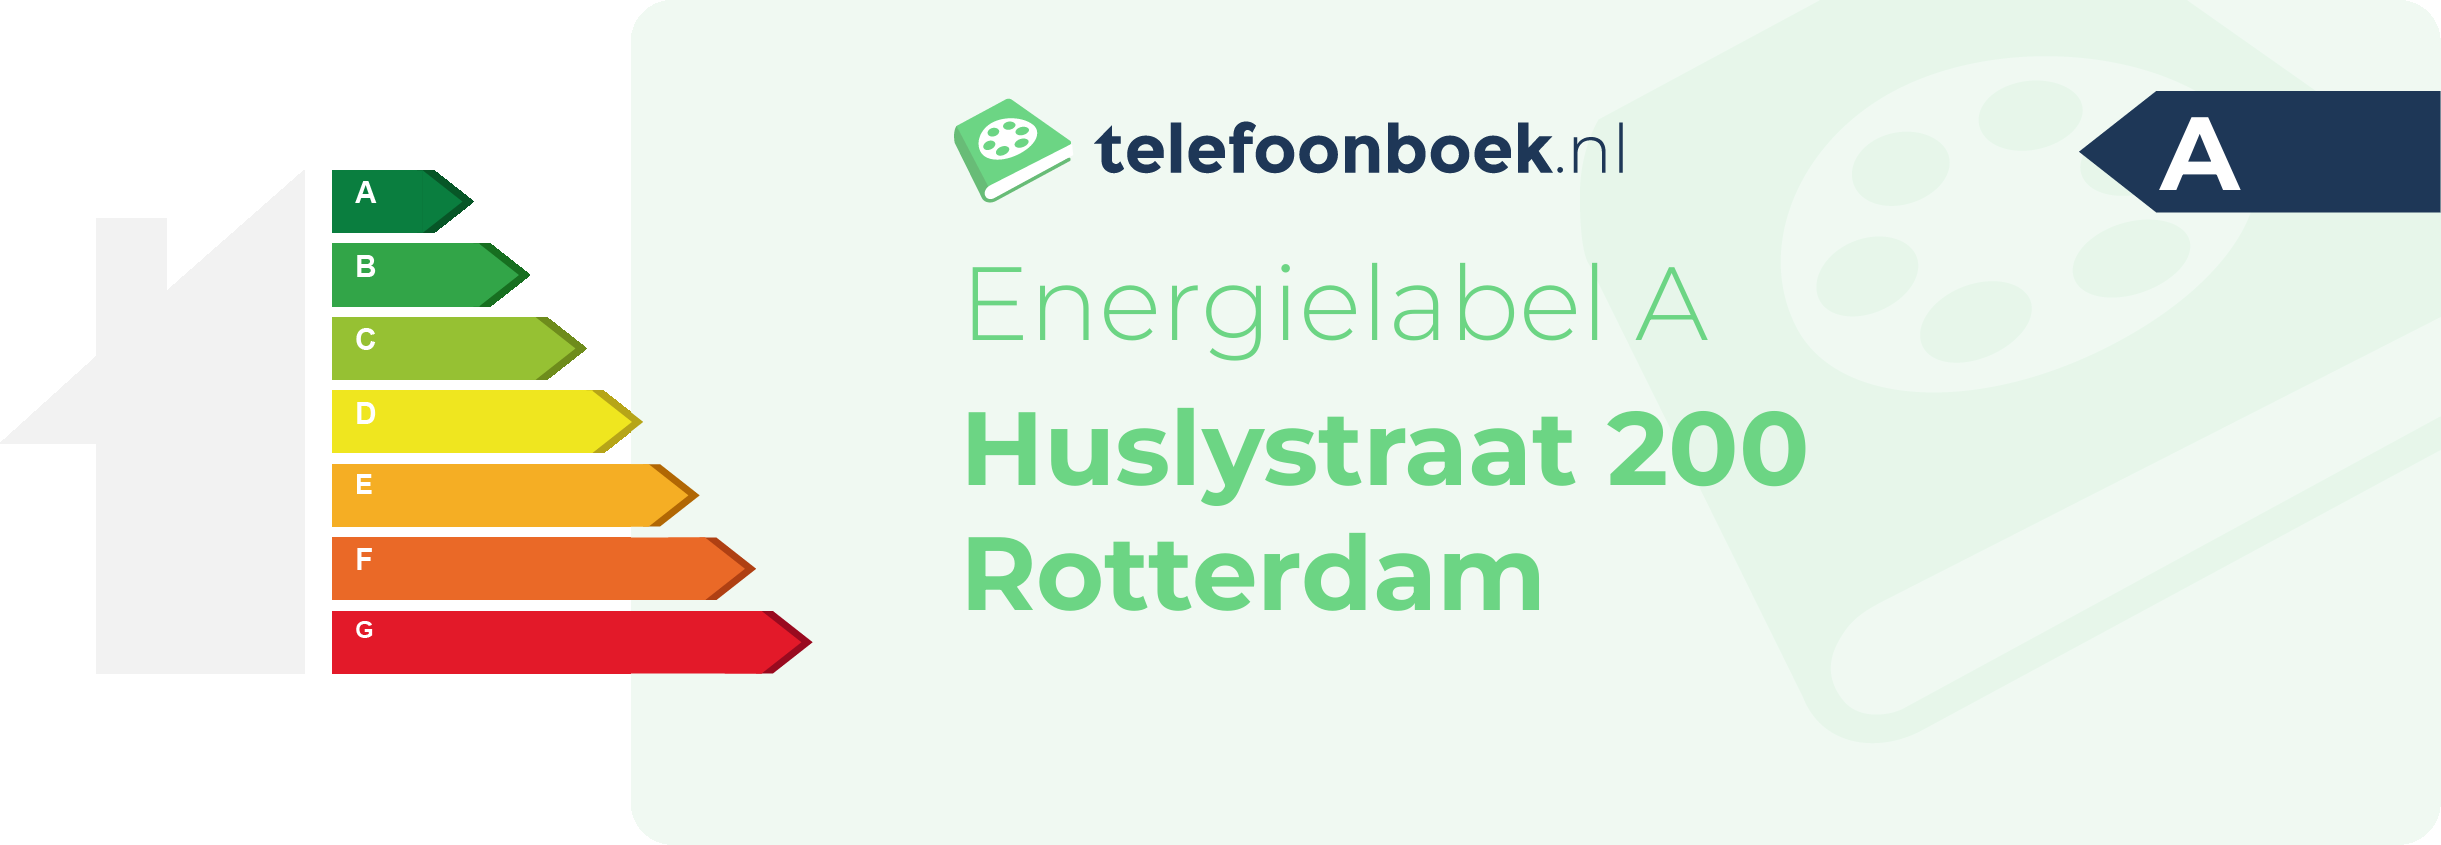 Energielabel Huslystraat 200 Rotterdam